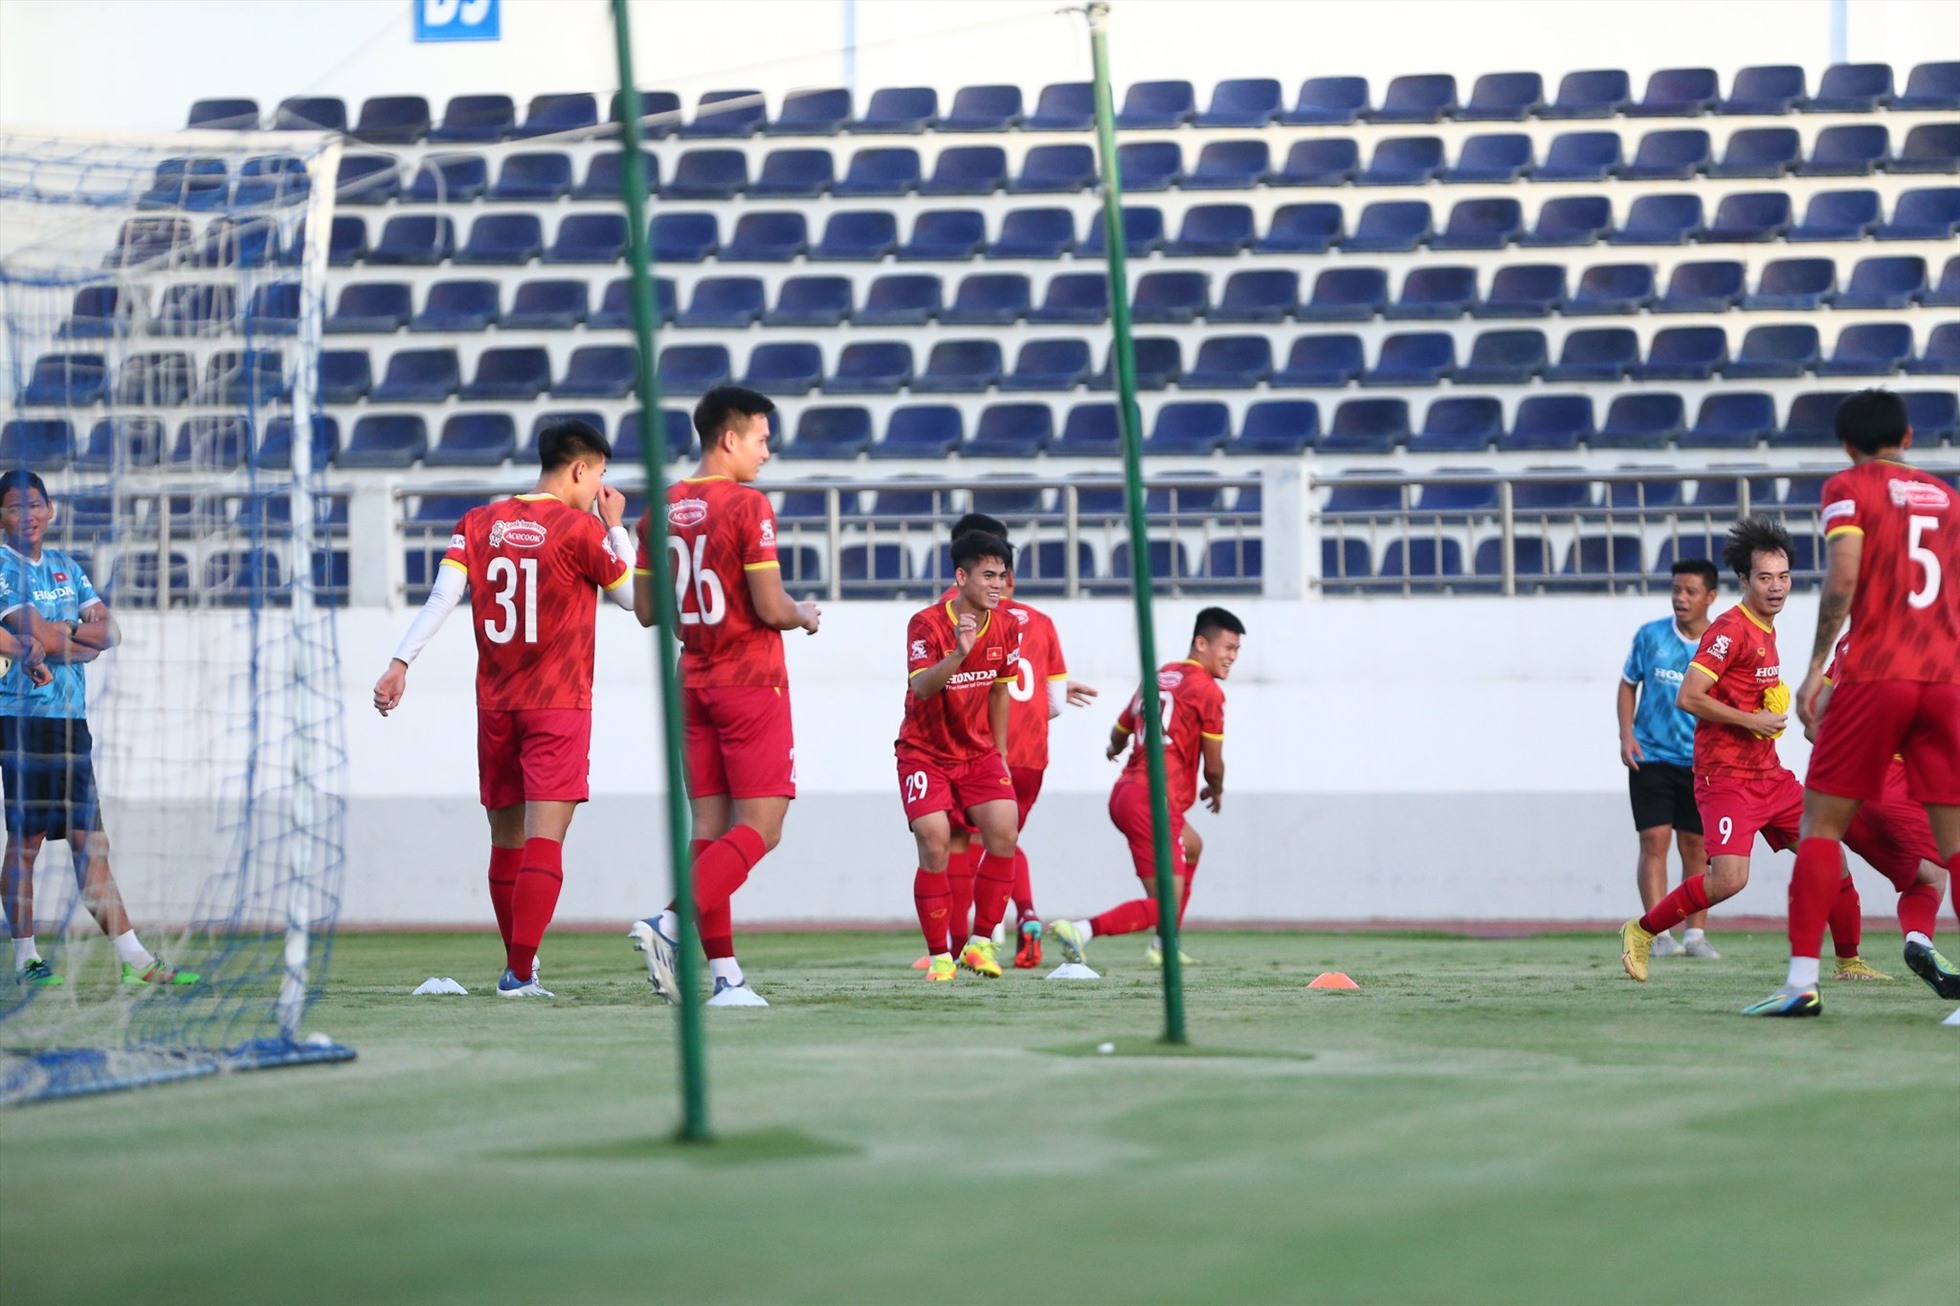 Đội tuyển Việt Nam vẫn tập luyện dưới sự chỉ đạo của trợ lý Lee Young-jin hôm nay. Huấn luyện viên Park Hang Seo ngày mai (7.12) mới quay trở lại sau 2 ngày vắng mặt. “Thuyền trưởng” của đội tuyển Việt Nam vừa trở về Hàn Quốc để nhận huân chương vì sự nghiệp ngoại giao.